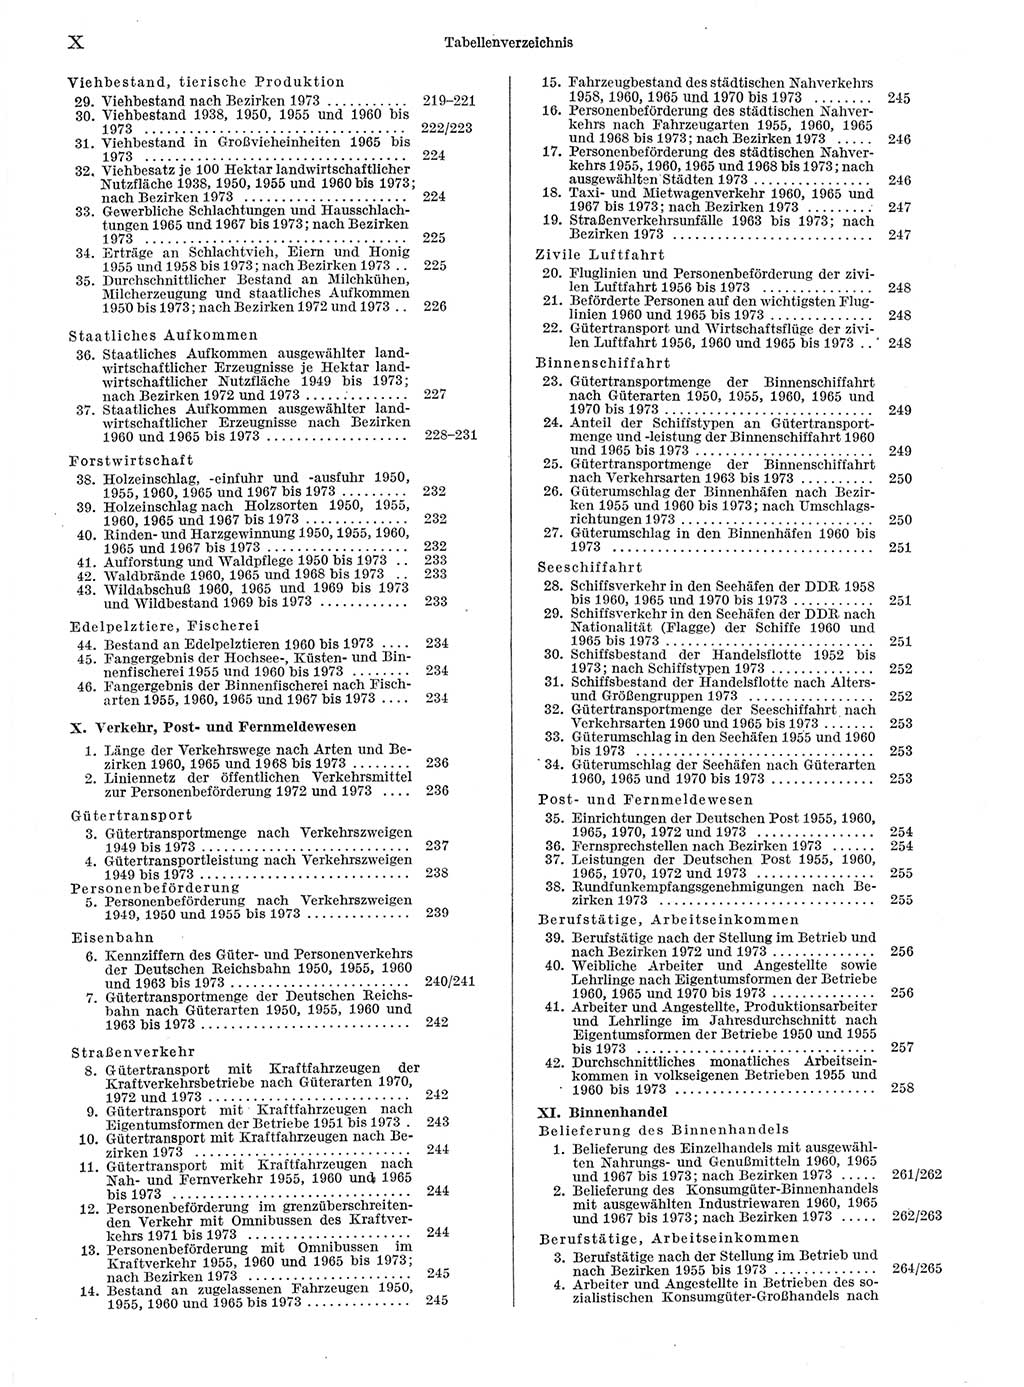 Statistisches Jahrbuch der Deutschen Demokratischen Republik (DDR) 1974, Seite 10 (Stat. Jb. DDR 1974, S. 10)